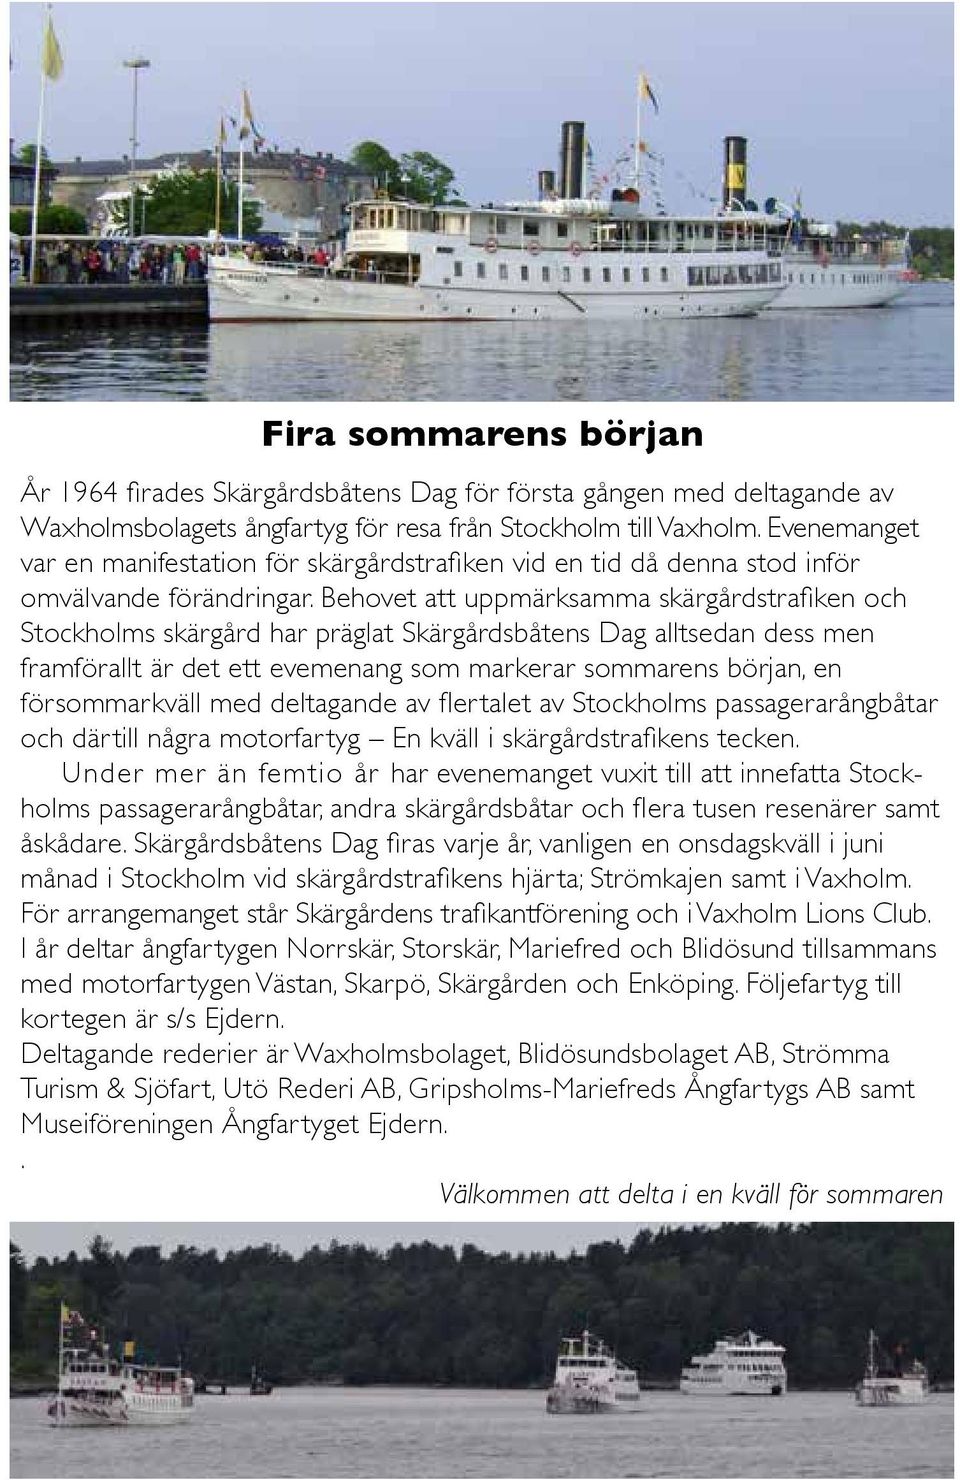 Behovet att uppmärksamma skärgårdstrafiken och Stockholms skärgård har präglat Skärgårdsbåtens Dag alltsedan dess men framförallt är det ett evemenang som markerar sommarens början, en försommarkväll